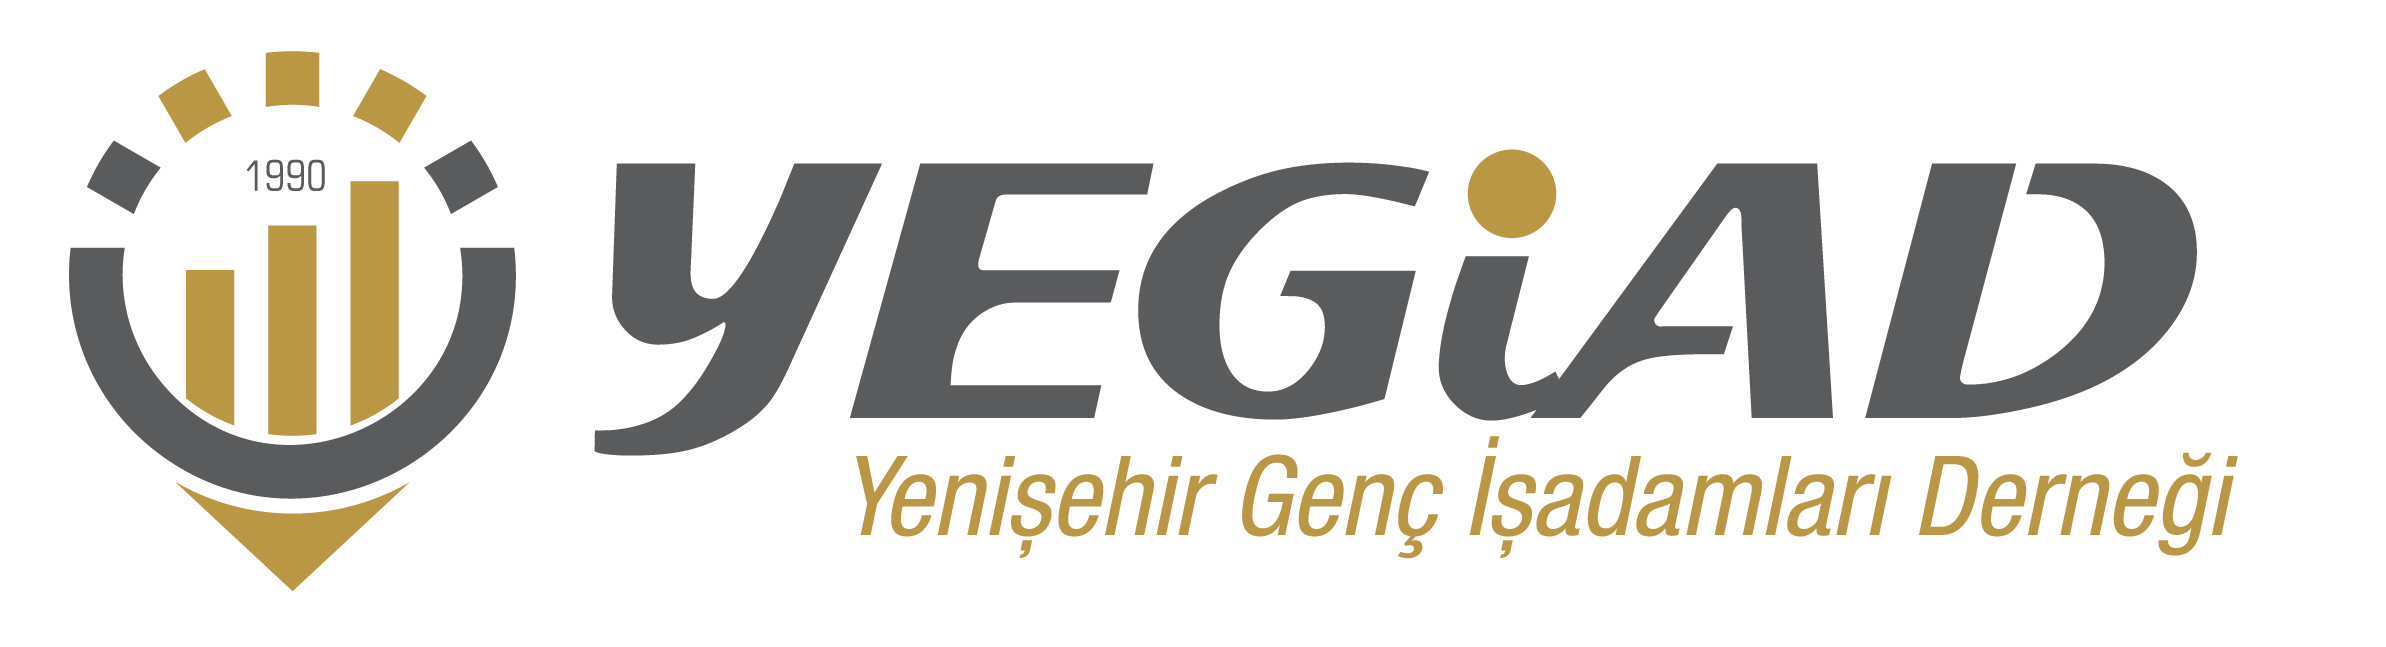 yegiad logo (1)